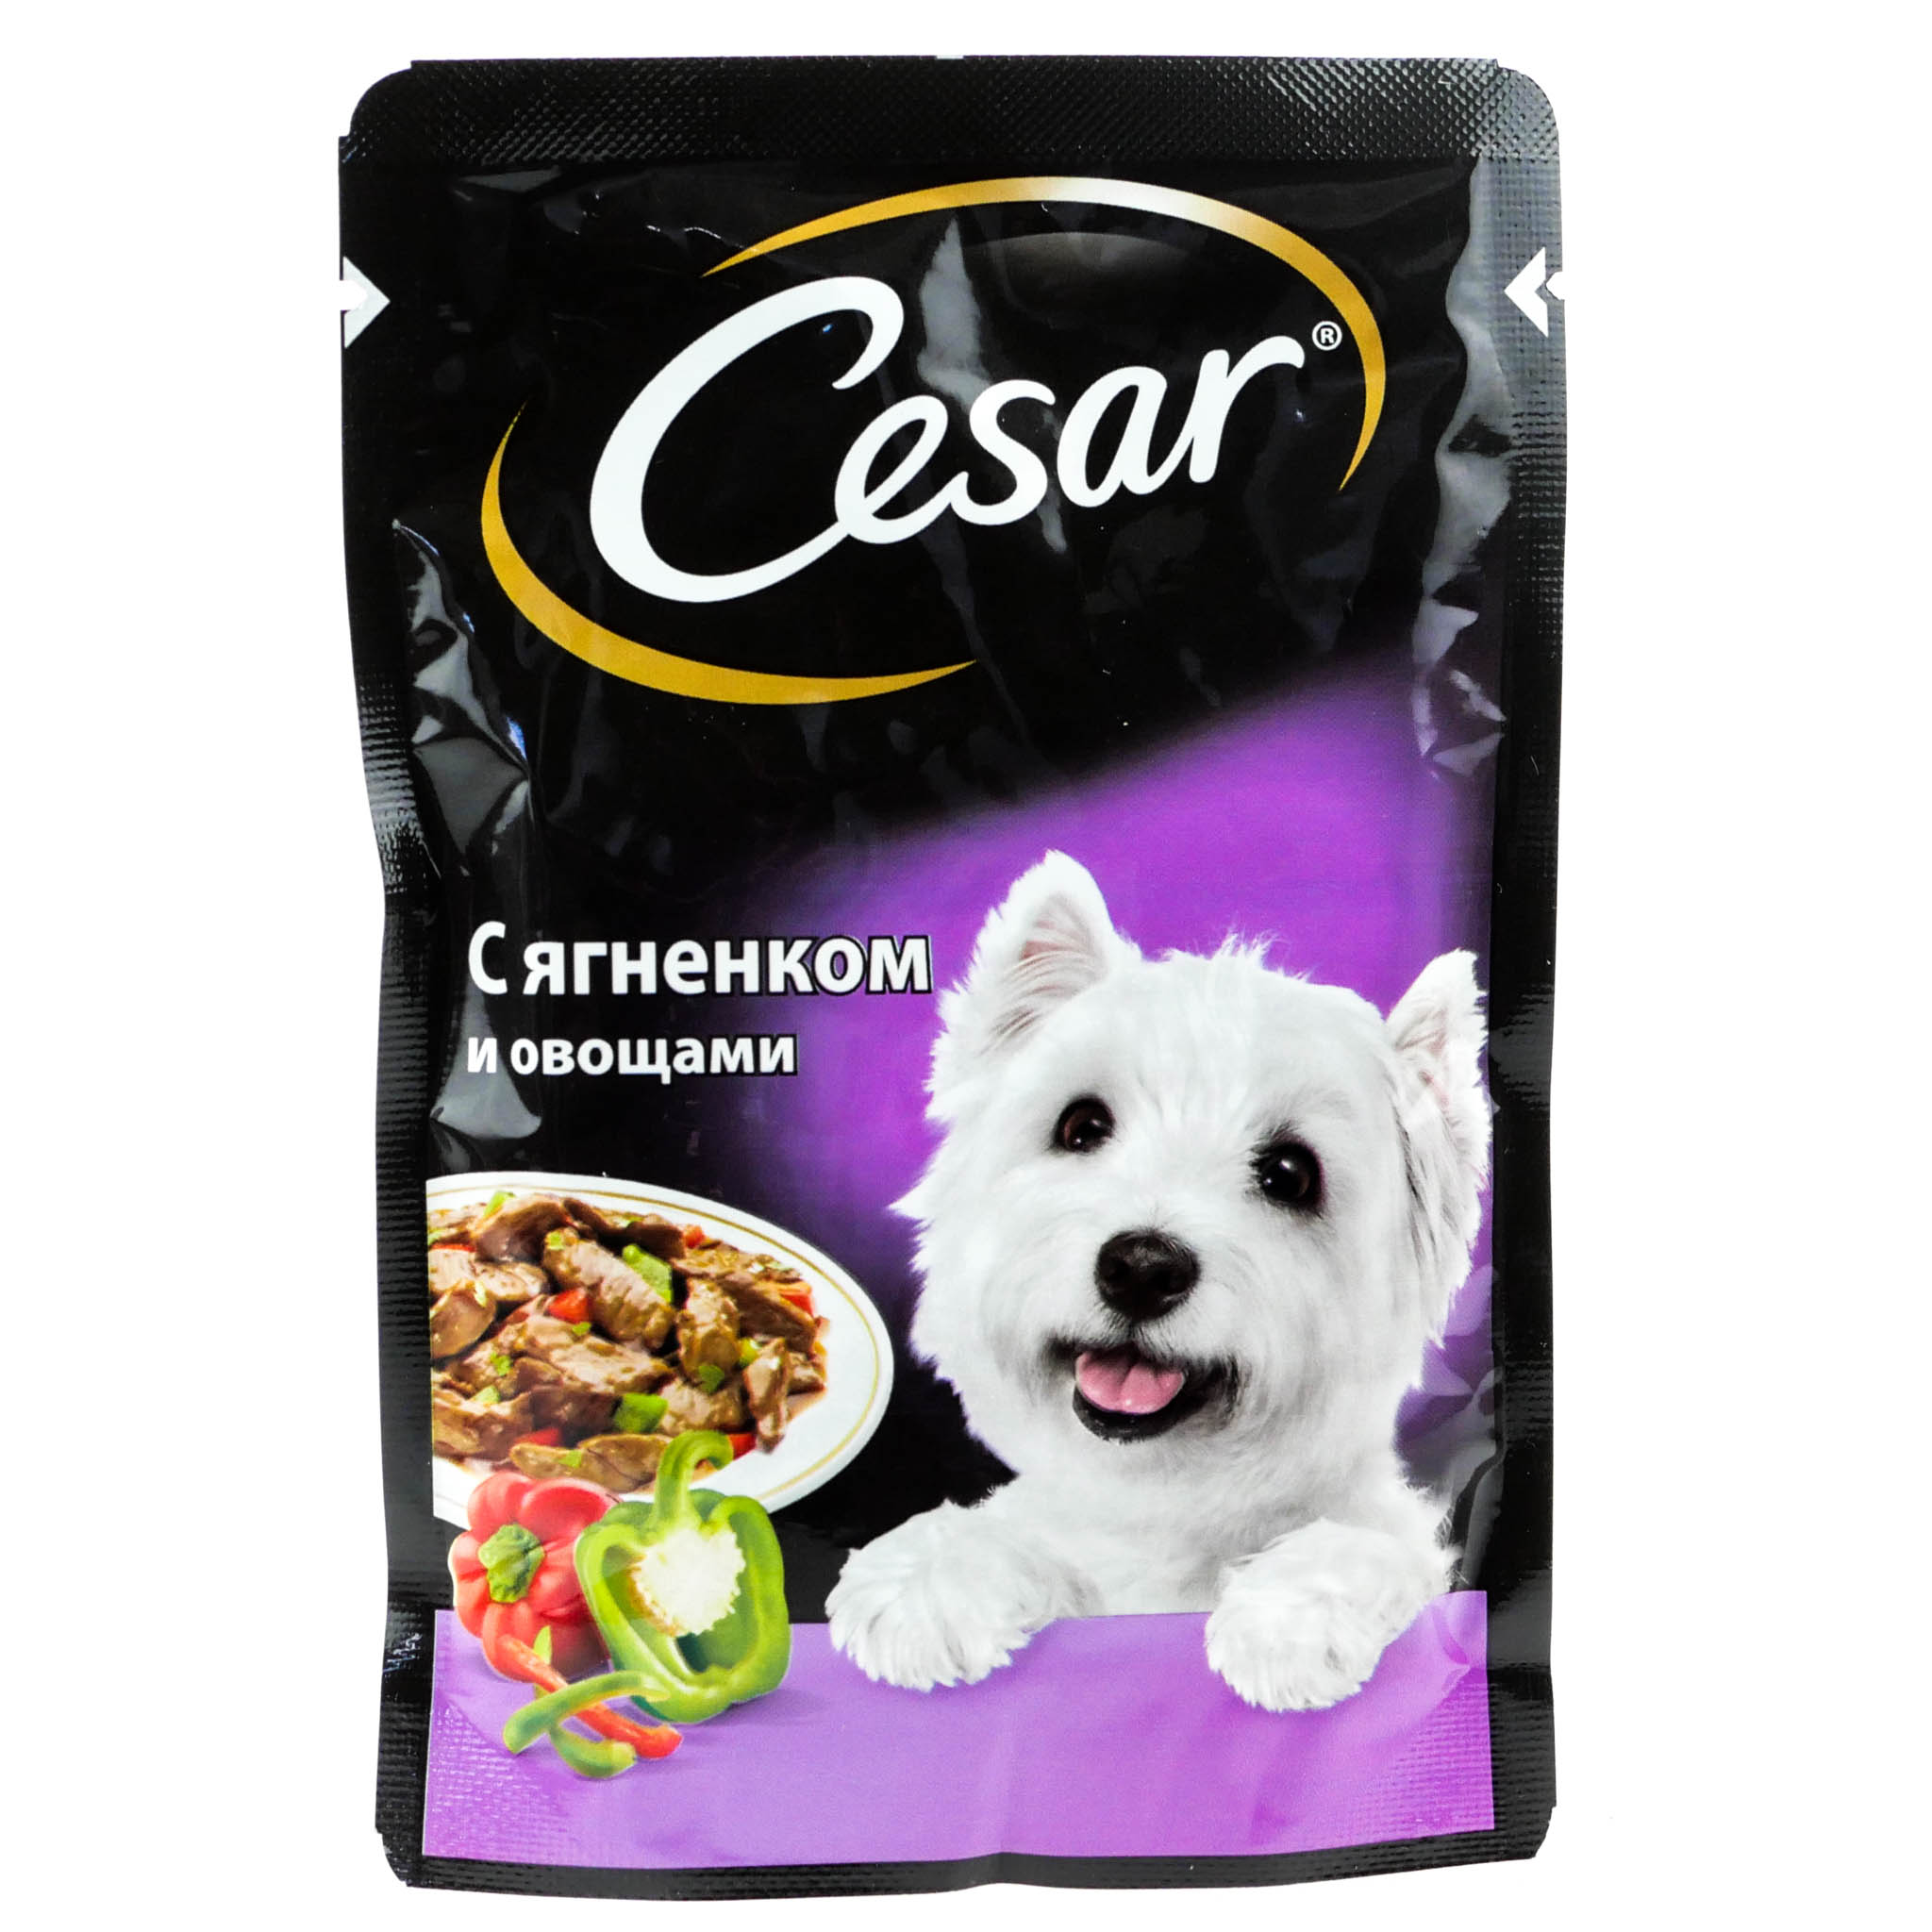     Cesar    85 